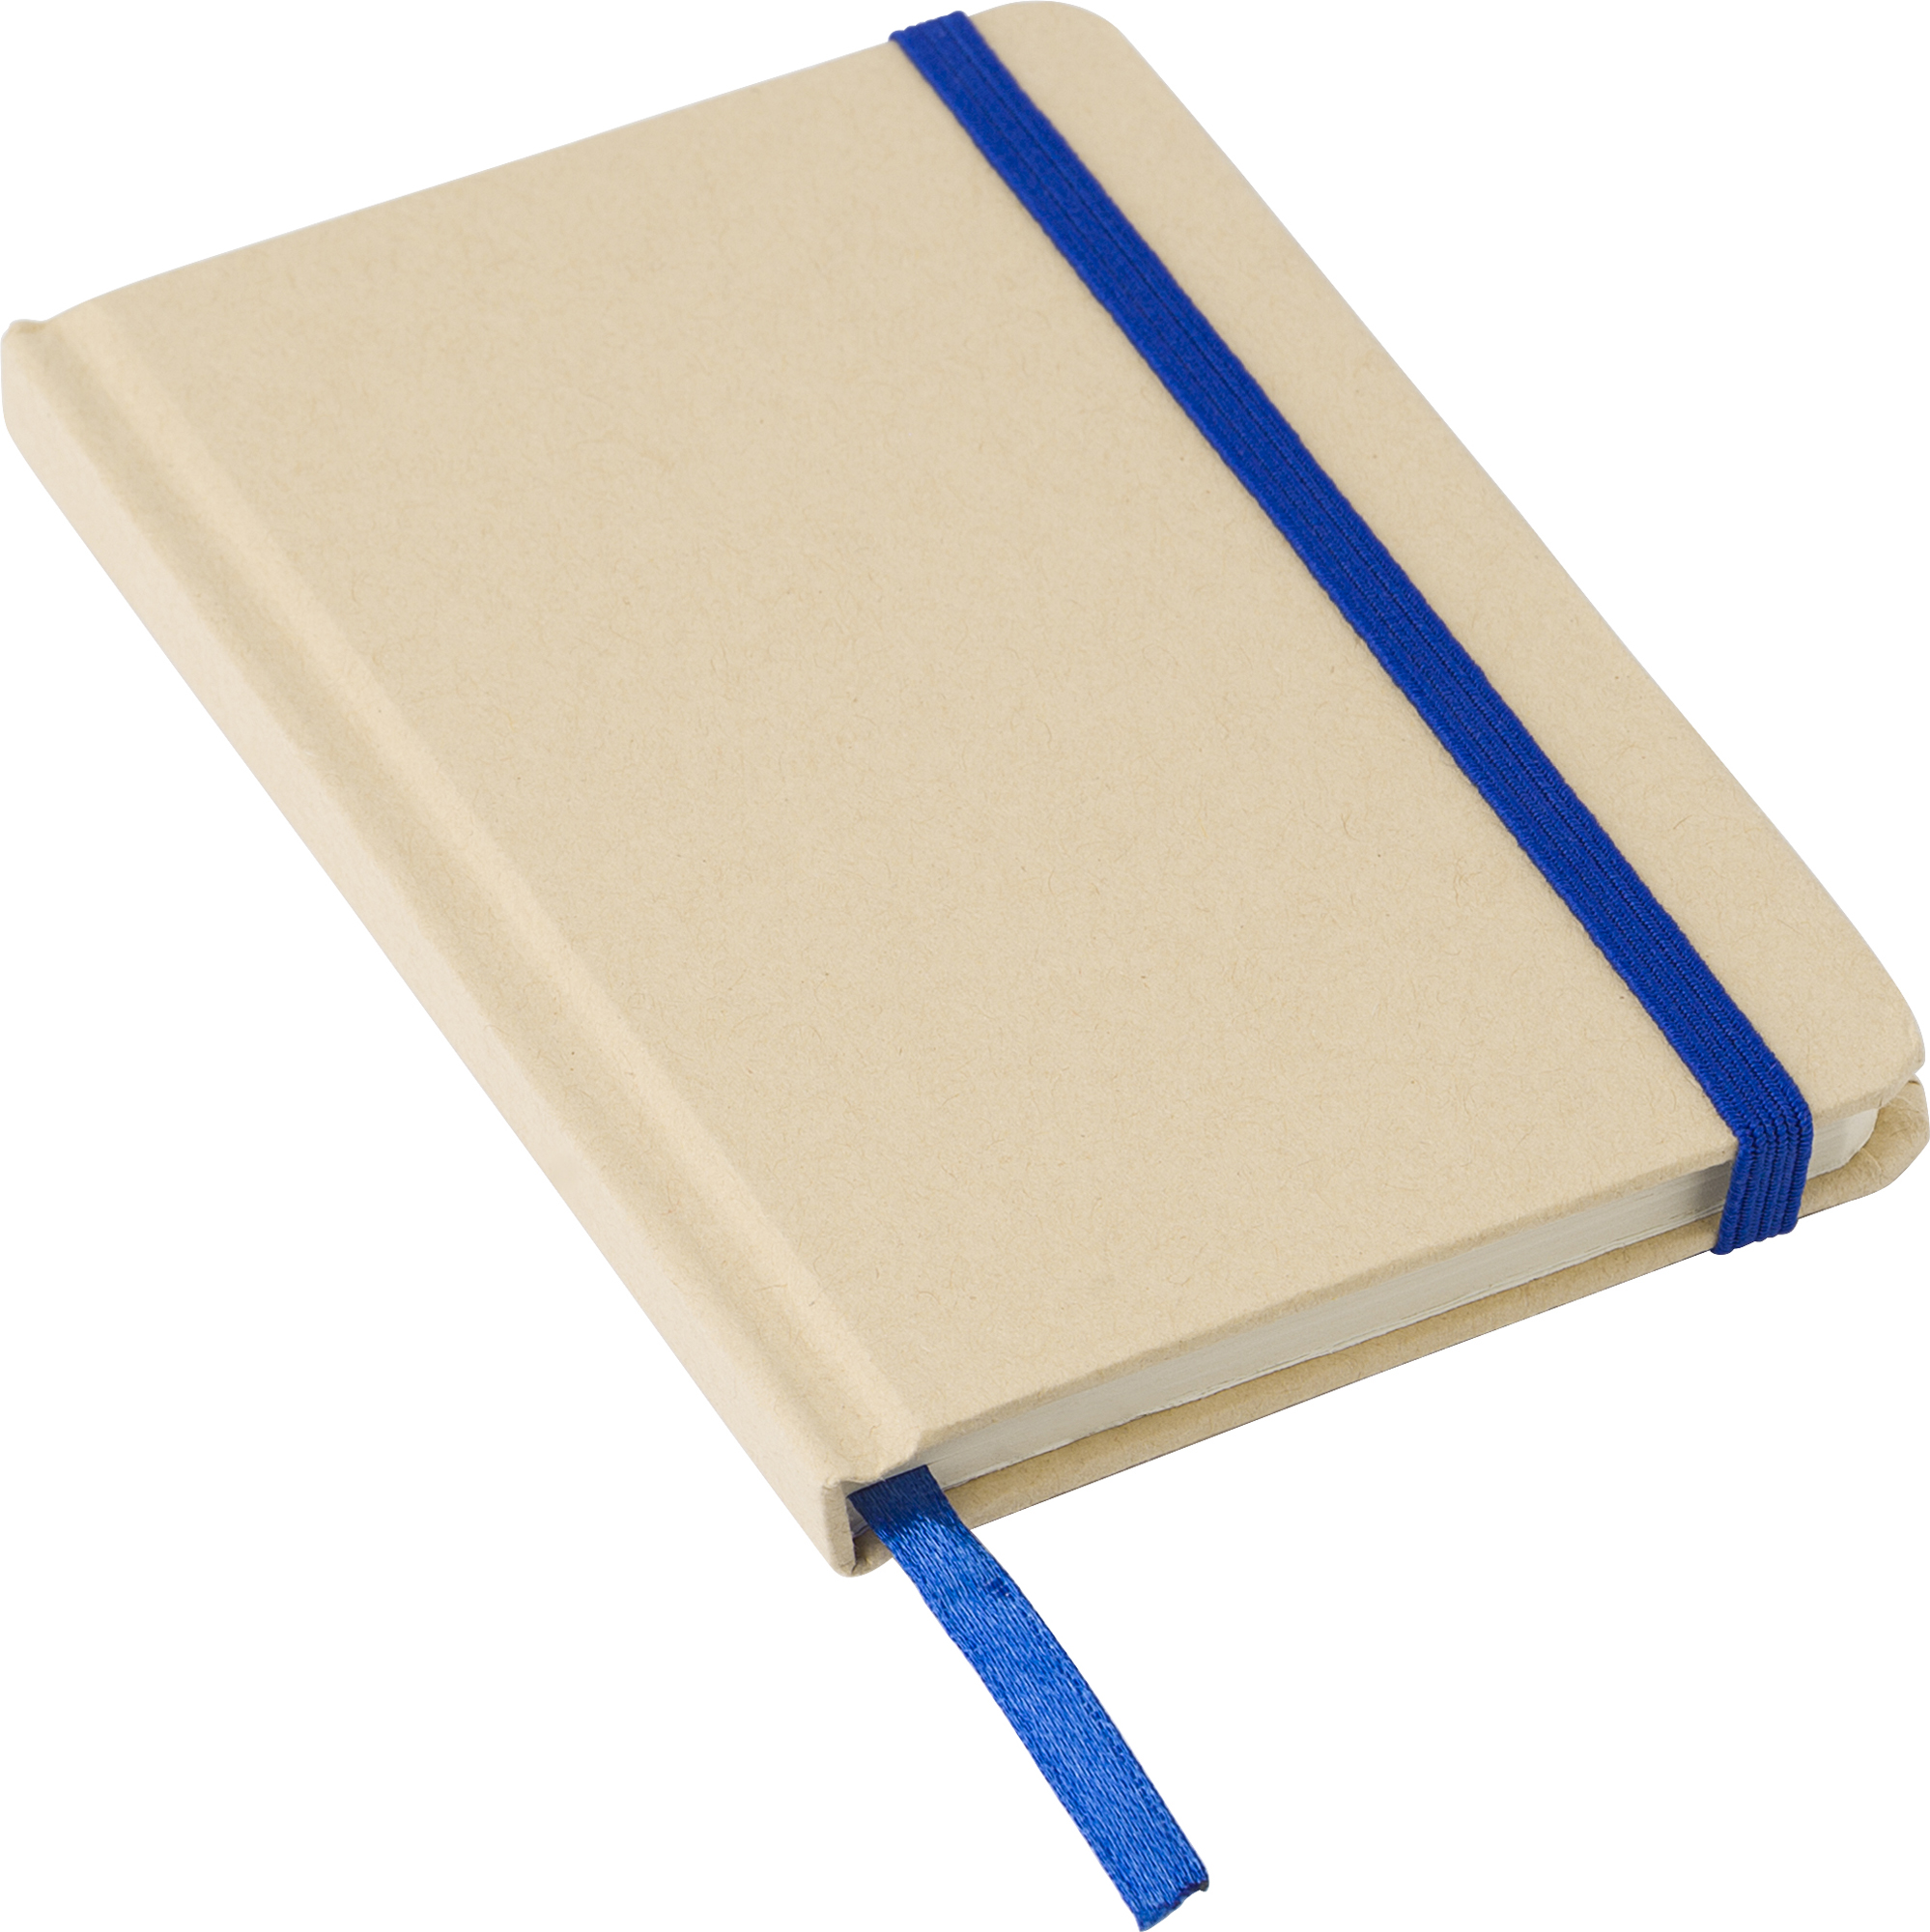 000000970665 005999999 3d135 lft pro01 2023 fai - Kraft notebook (A6)